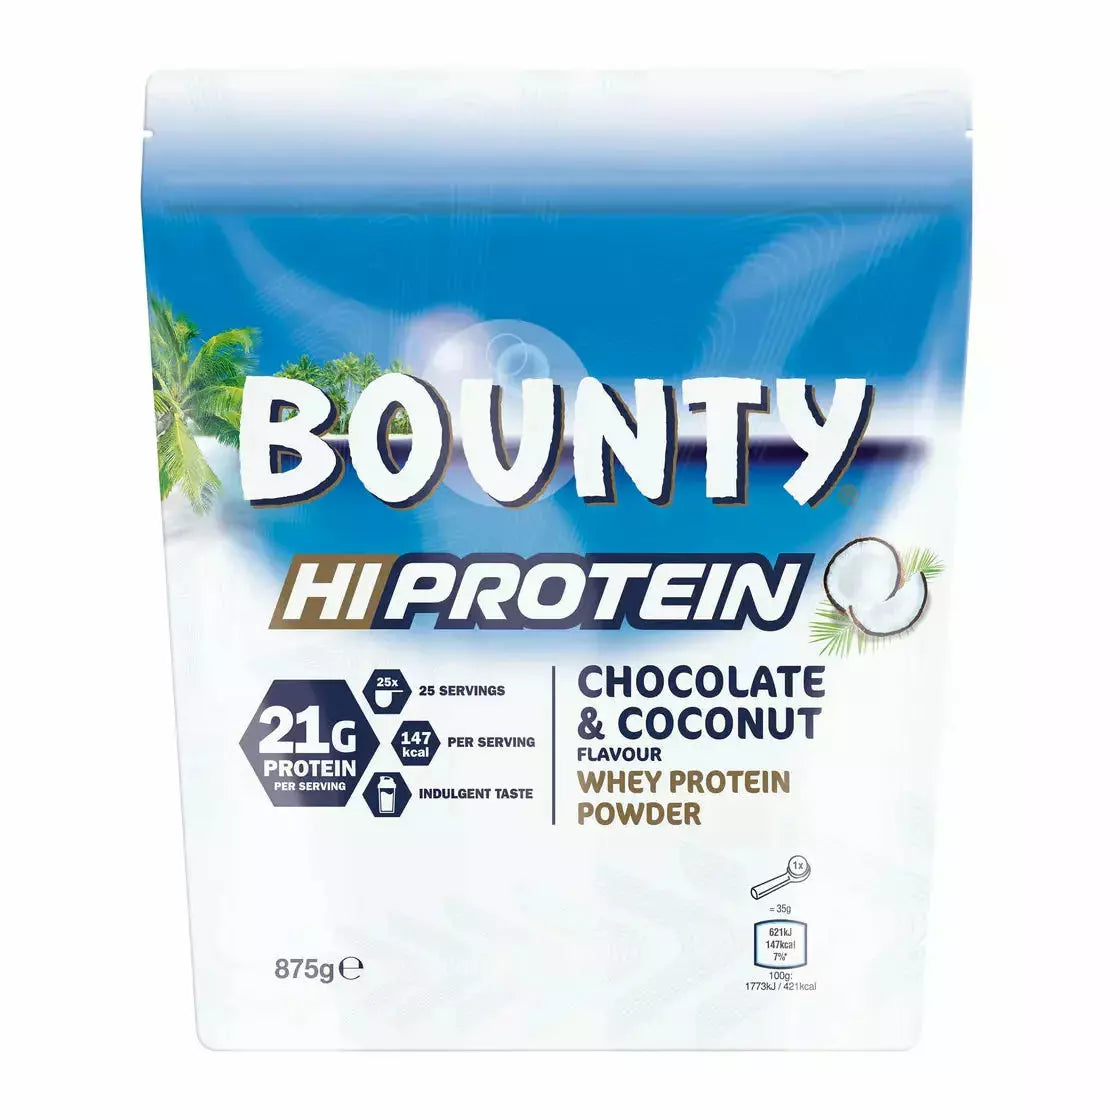 MARS Brand Hi Protein Whey Protein Powder (25 servings) mars-brand-hi-protein-whey-protein-powder-25-servings Whey Protein Bounty BEST BY OCT 14. 2022 HiProtein